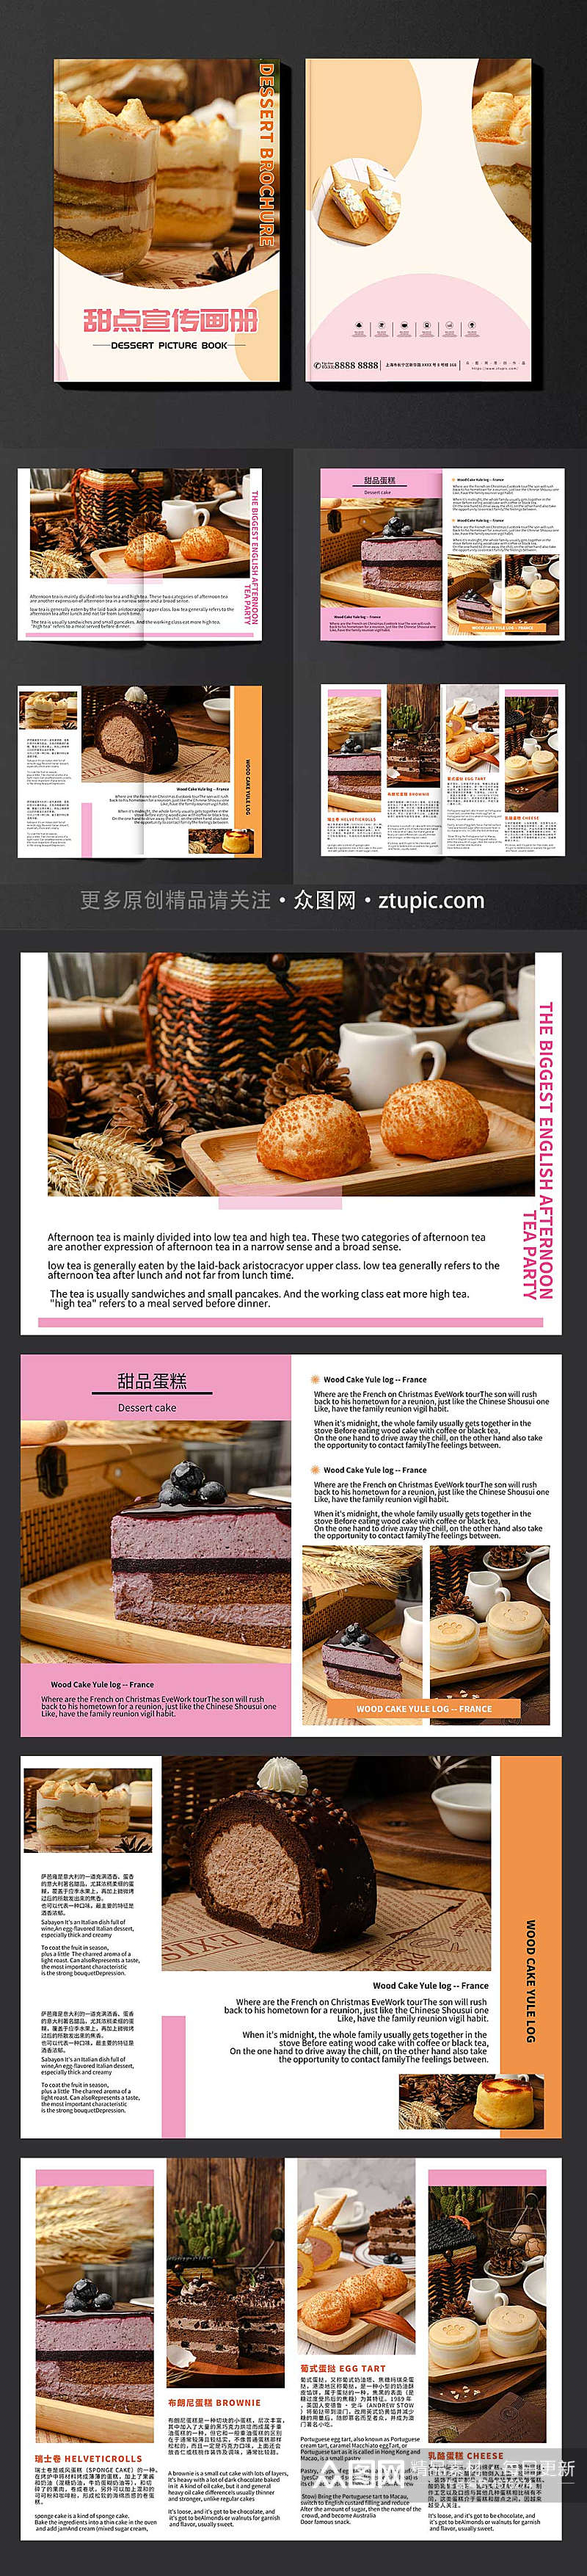 甜点甜品蛋糕下午茶美食宣传册画册素材